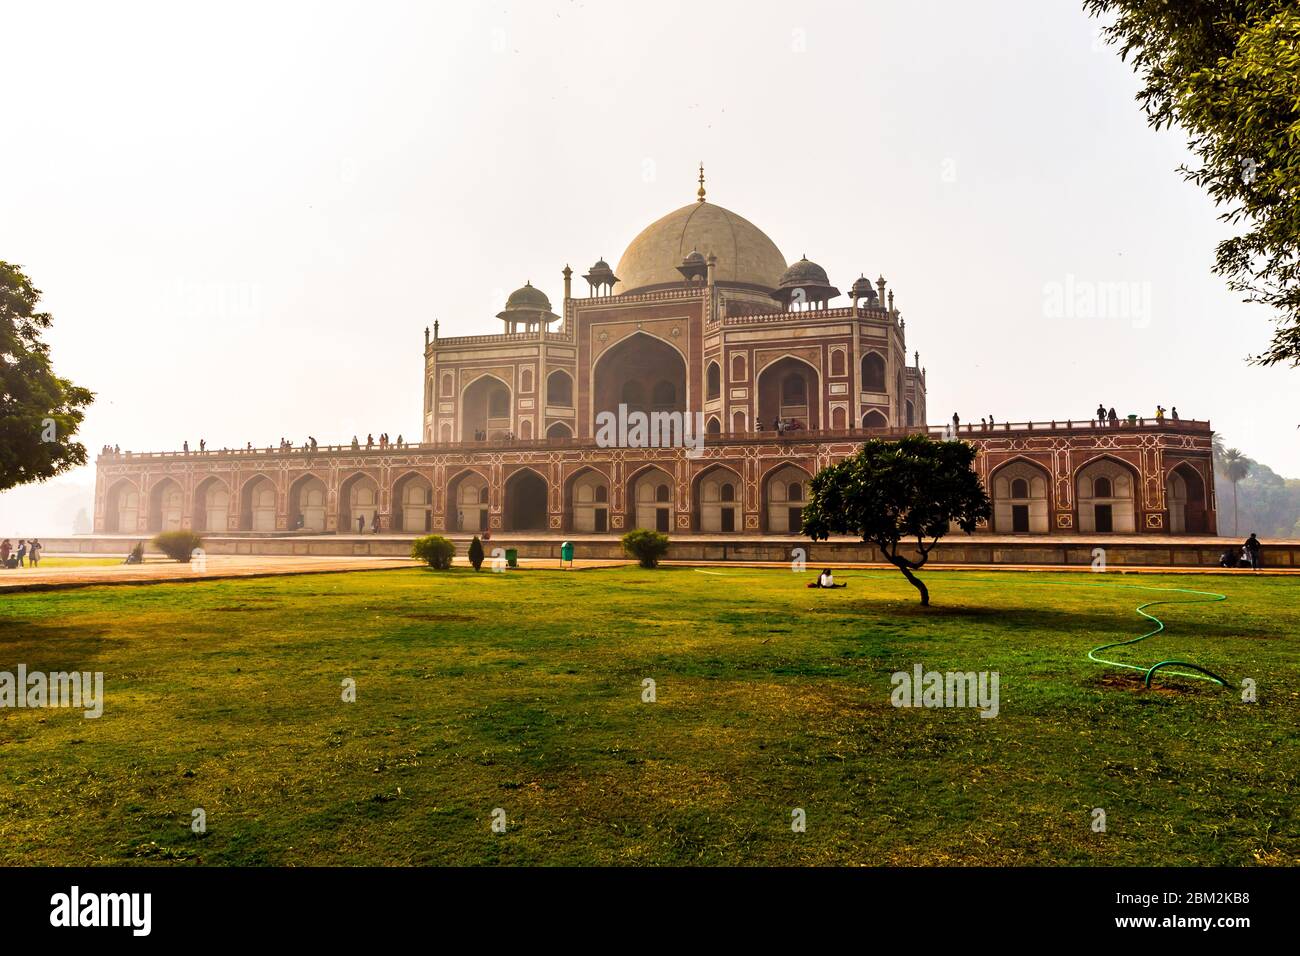 Primo giardino-tomba sul subcontinente indiano. La Tomba è un ottimo esempio di architettura persiana. Situato nell'area di Nizamuddin Est di Delhi. Foto Stock